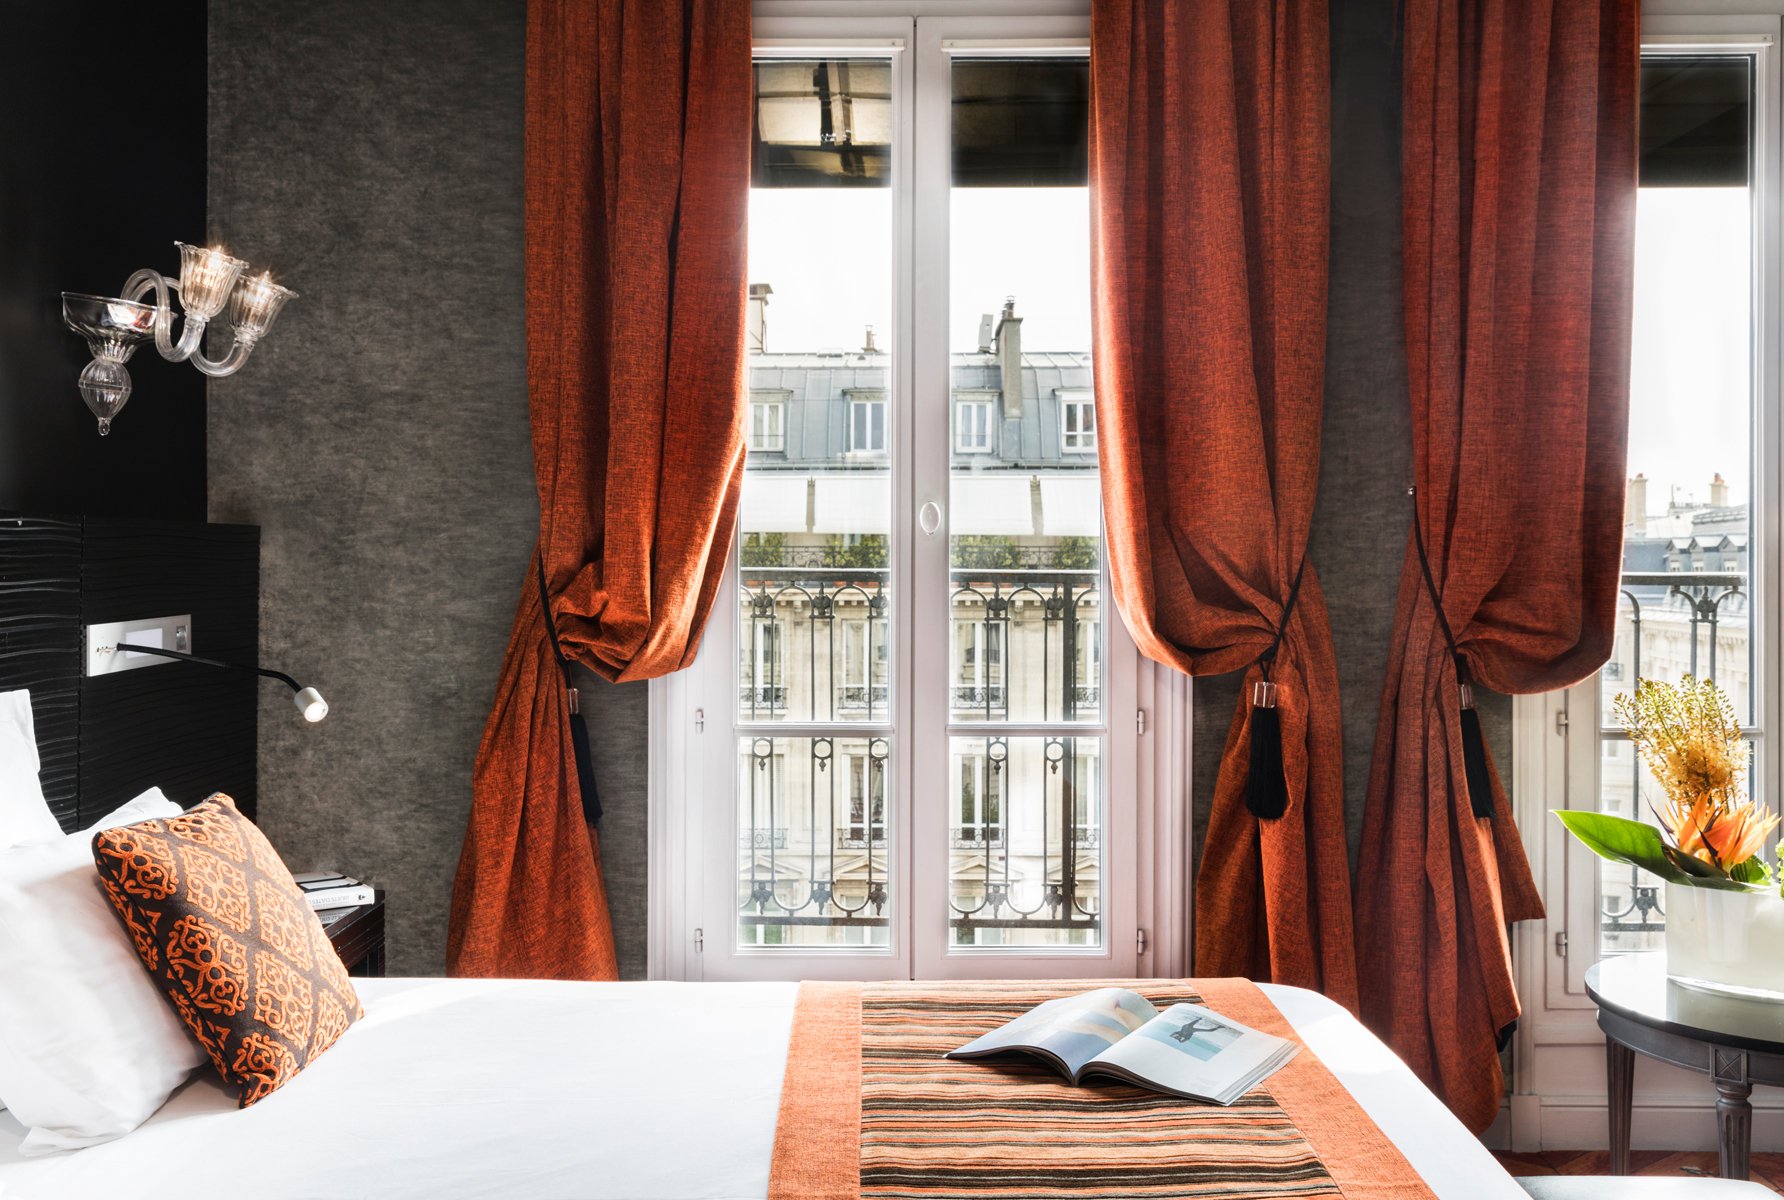 Maison Albar Hotels Le Champs-Elysées habitación ejecutiva